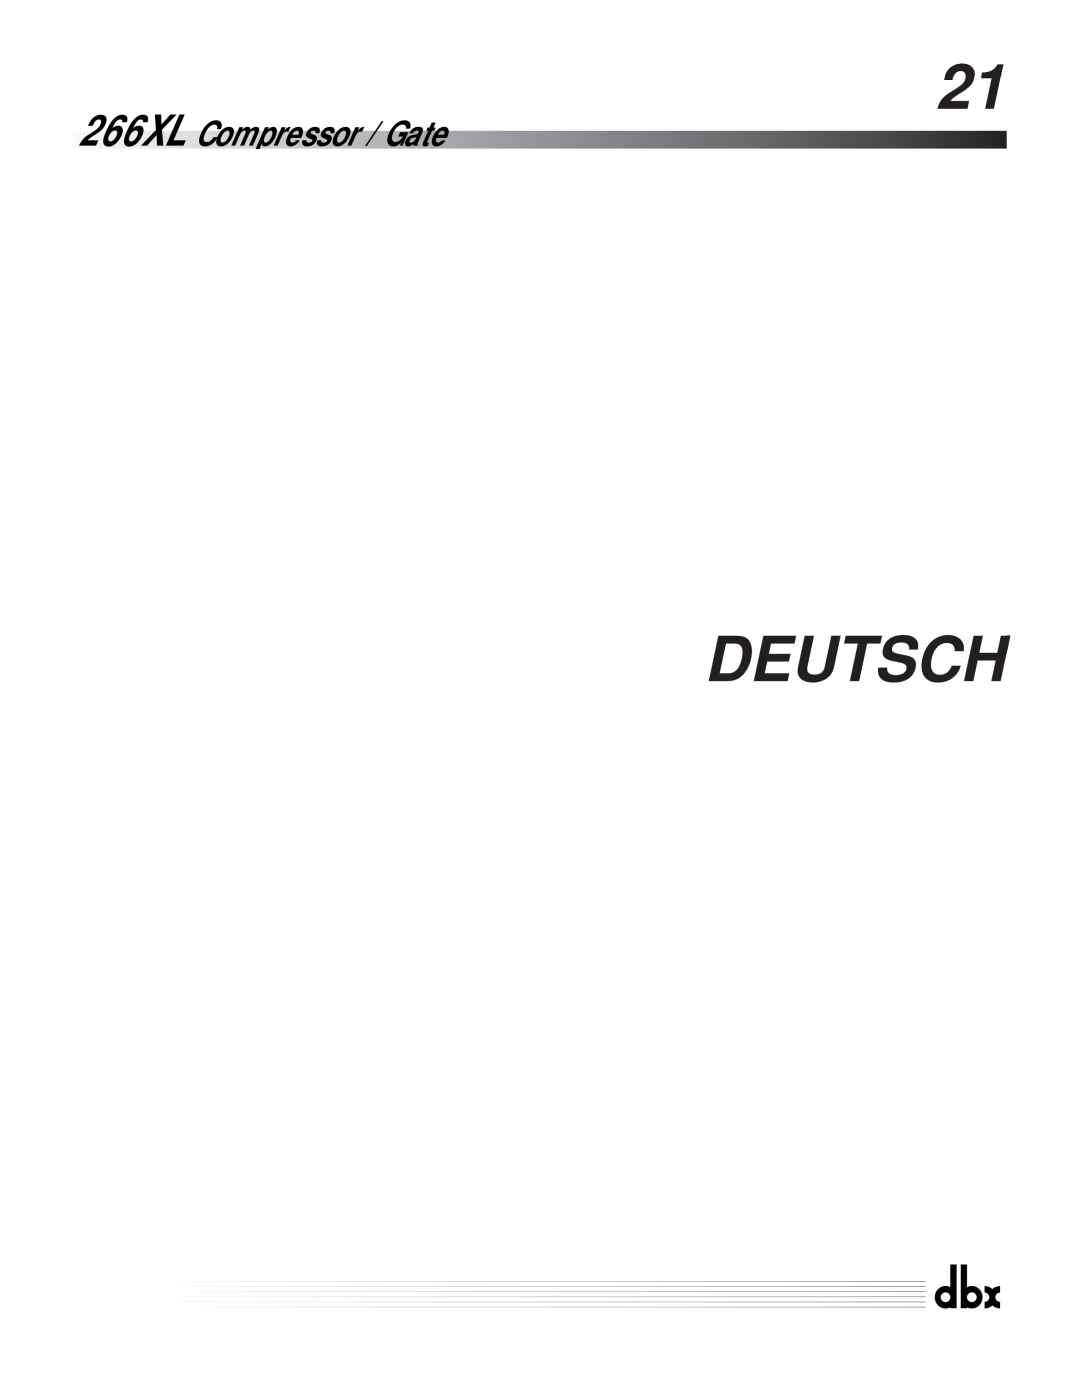 dbx Pro manuel dutilisation Deutsch, 266XL Compressor / Gate 